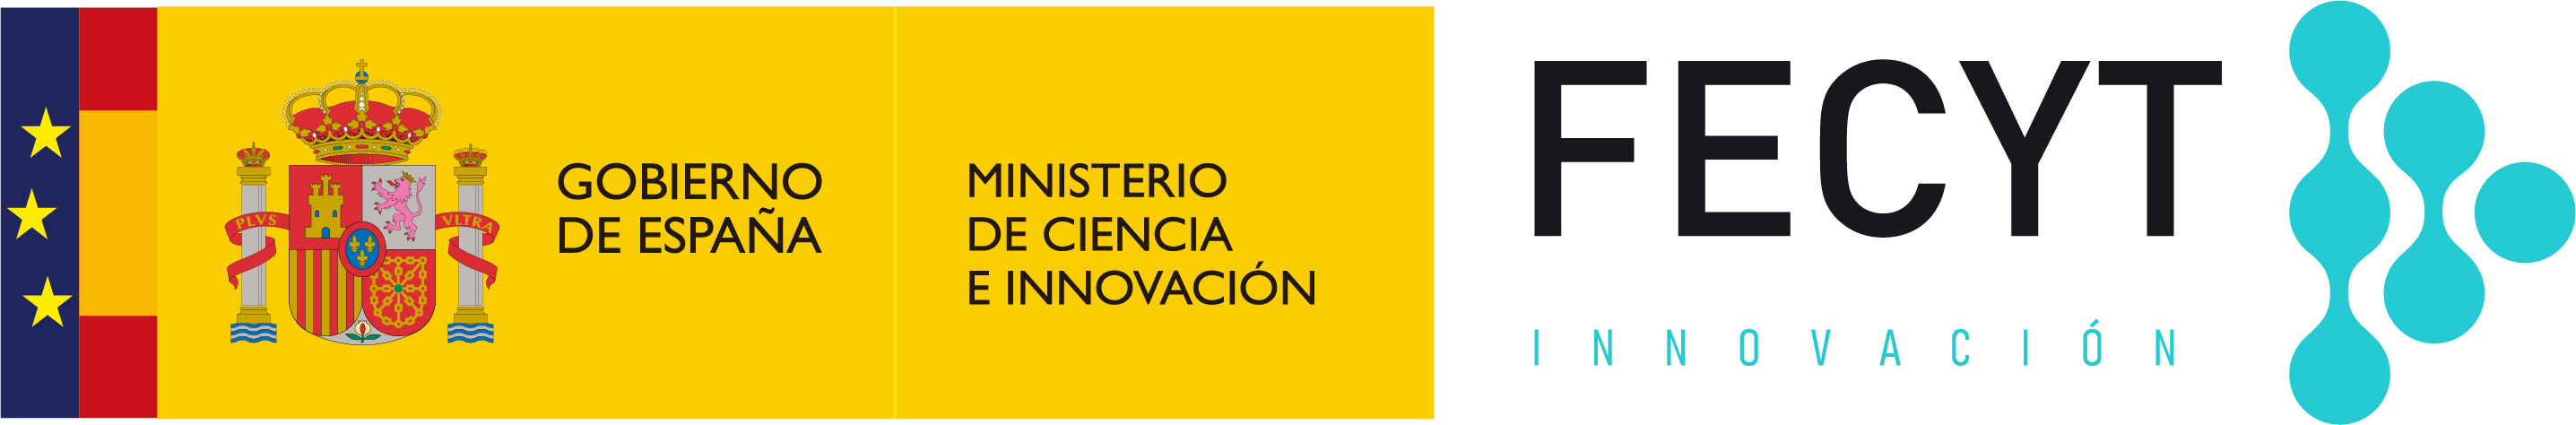 Fundación Española para la Ciencia y la Tecnología – Ministerio de Ciencia e Innovación.